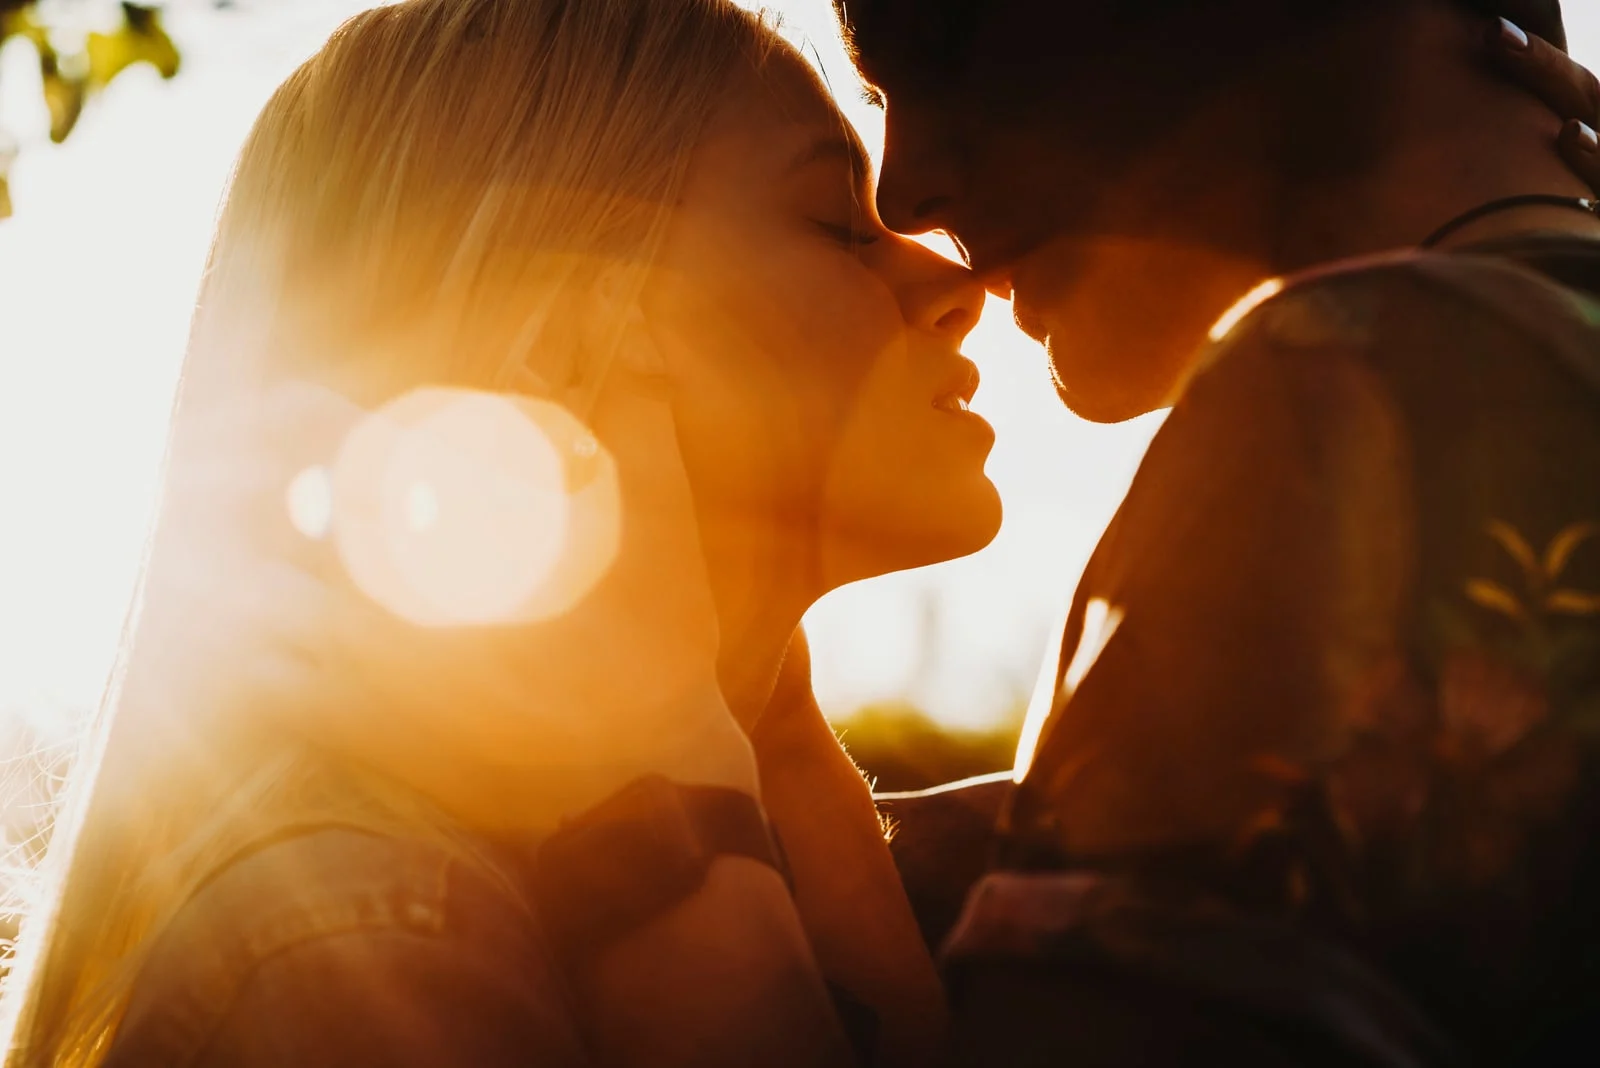 couple kissing against sunset light